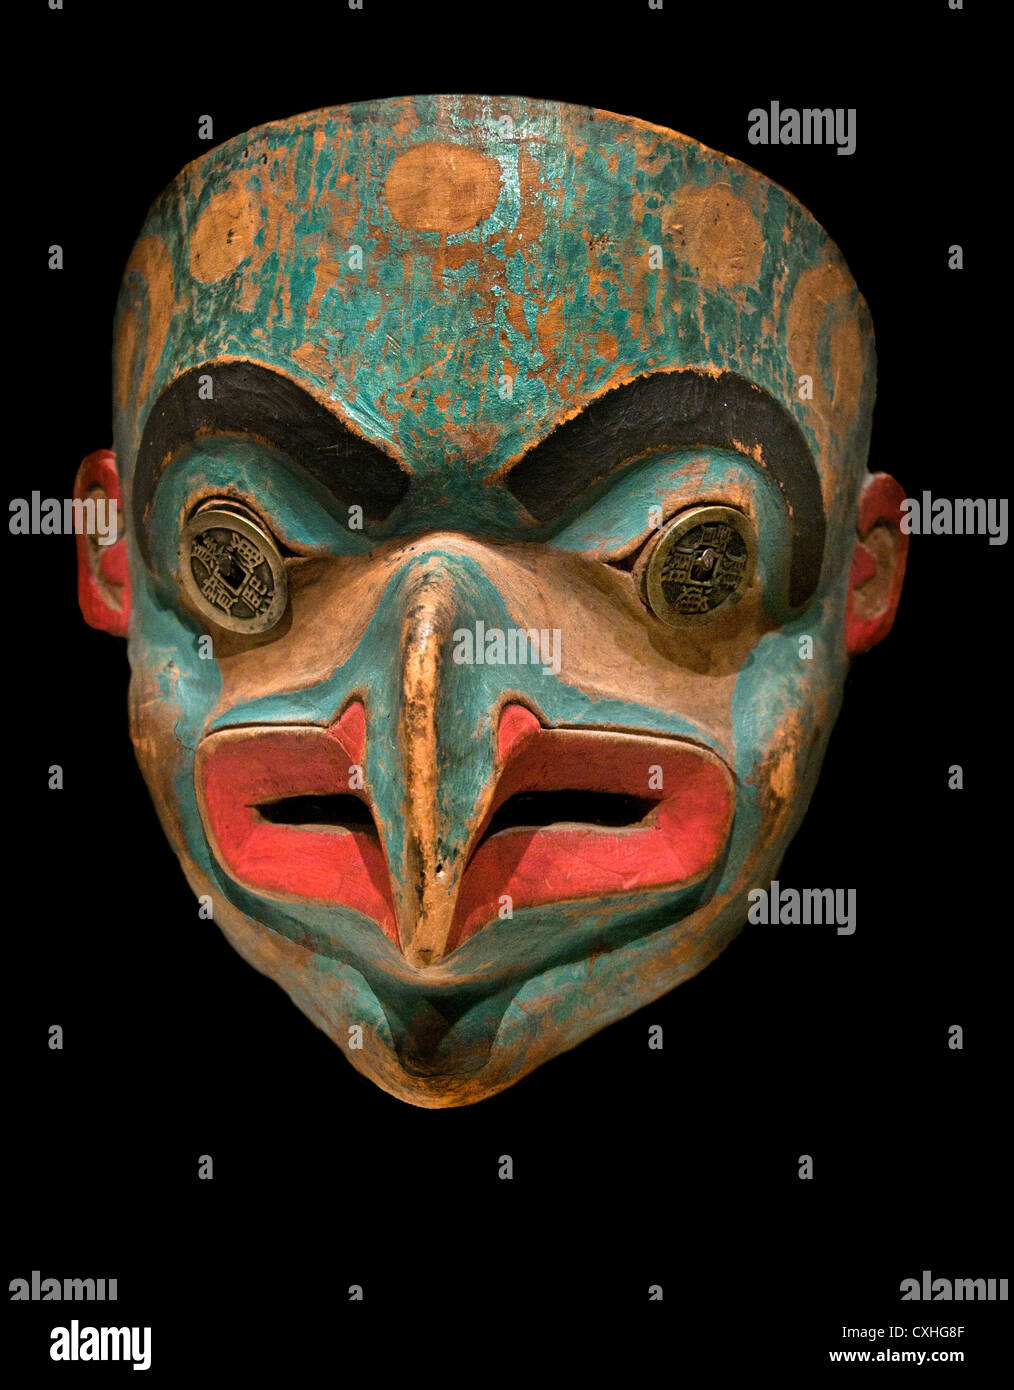 Masque de transformation 1820-30 United States Alaska Bois Tlingit pièces de métal peinture peau bronzée indigènes 20 cm Banque D'Images